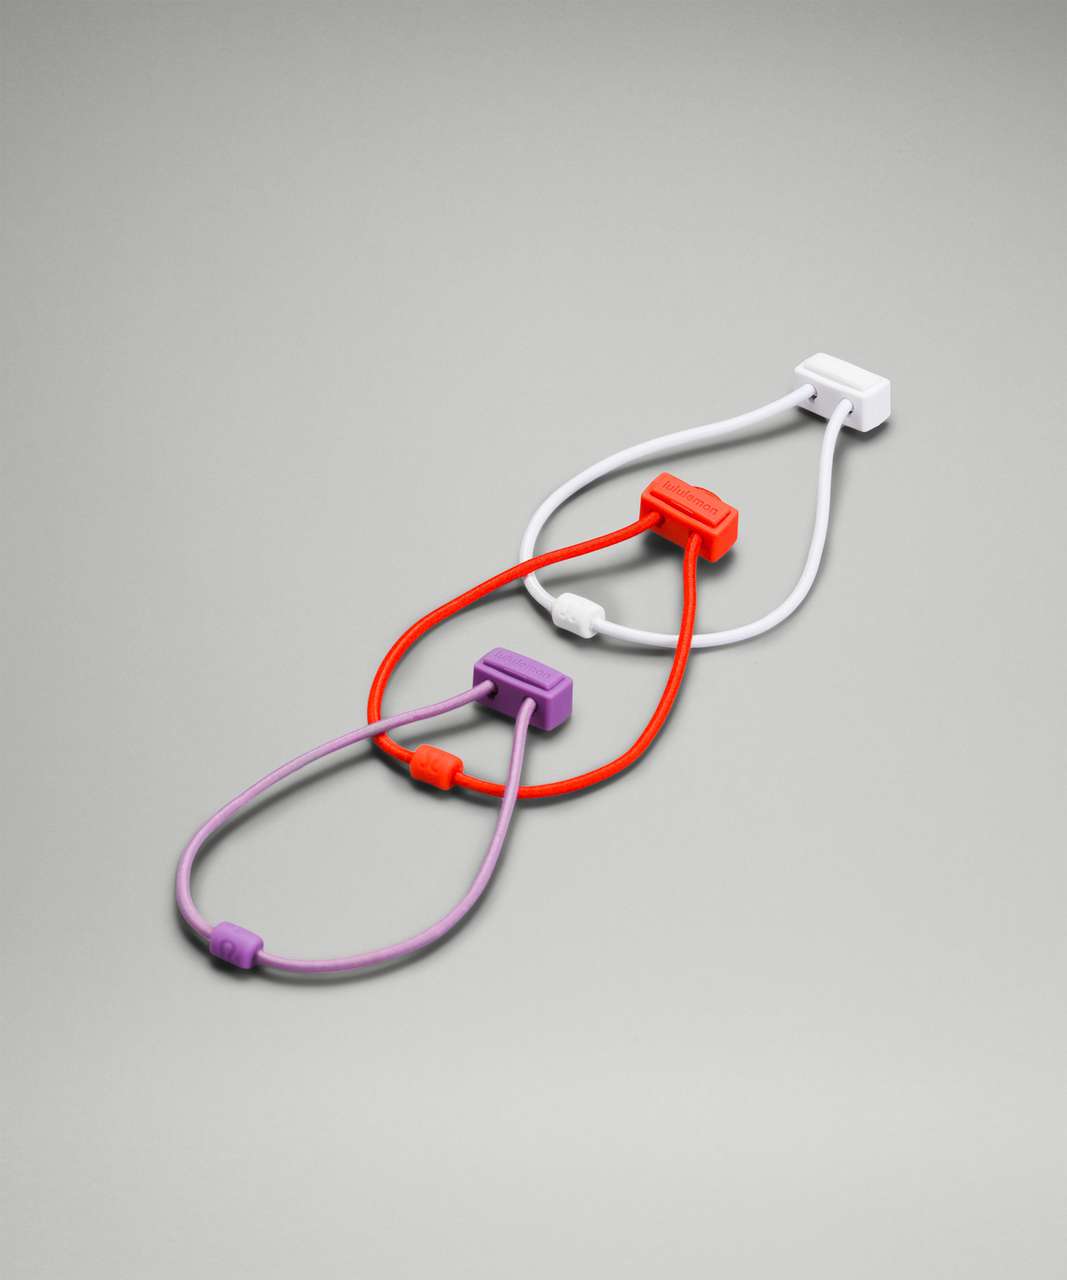 Lululemon Adjustable Hair Tie 3 Pack - White / Autumn Red / Wisteria Purple